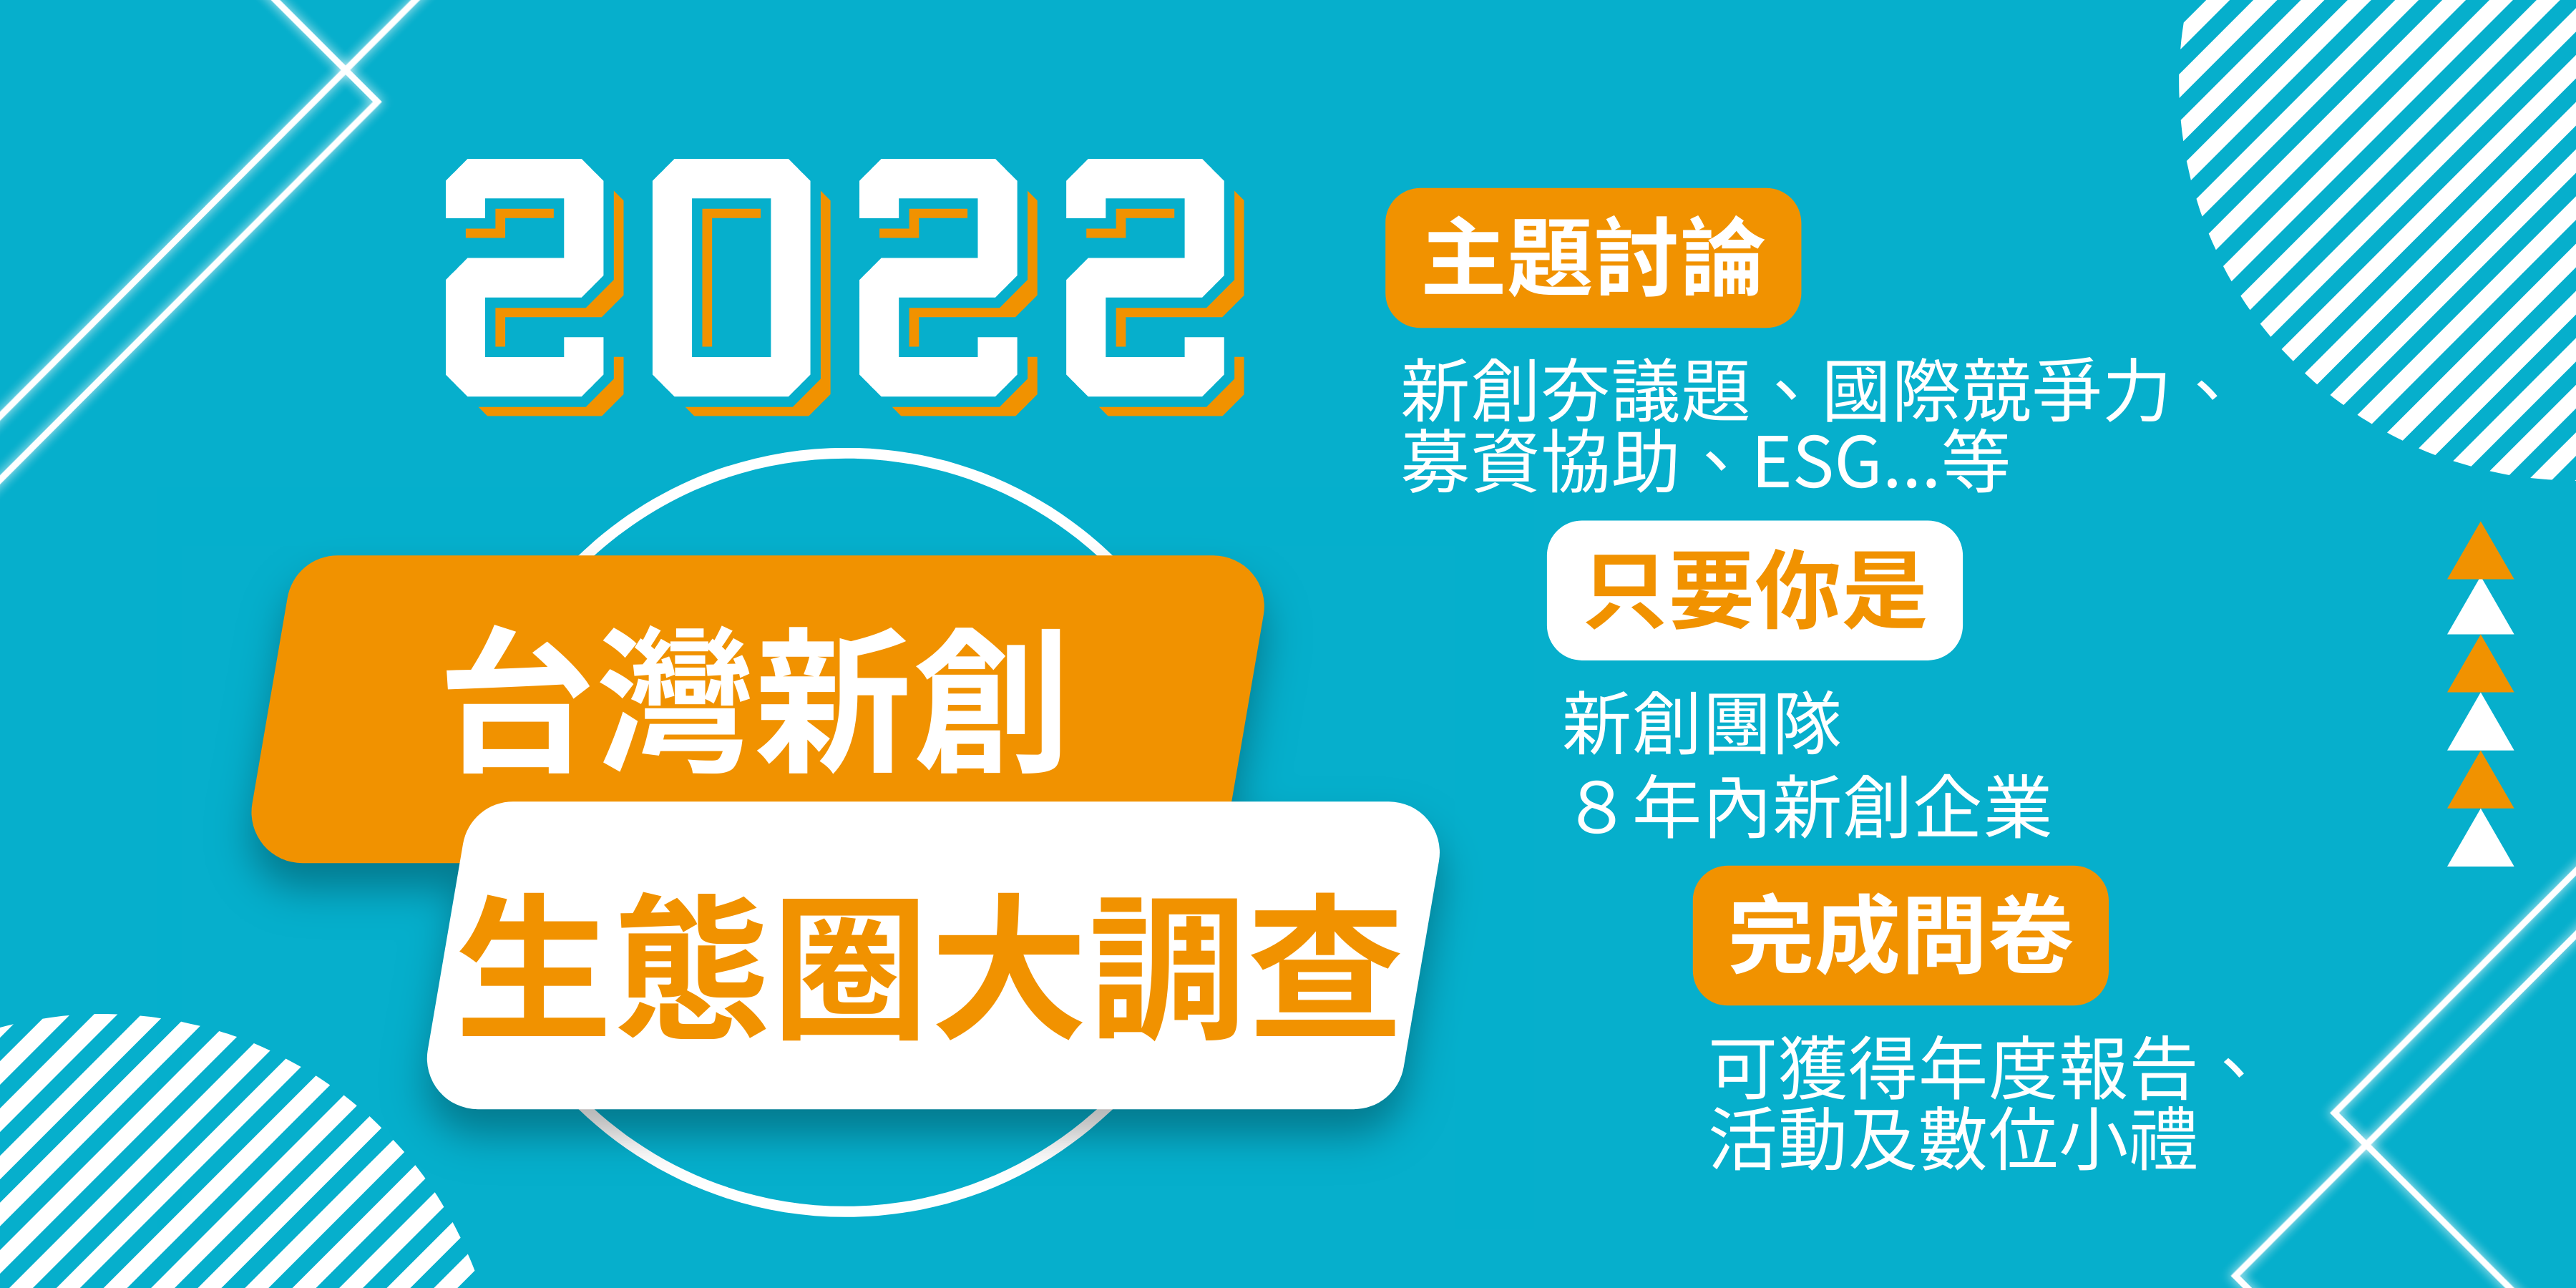 2022台灣新創生態圈大調查正式啟動